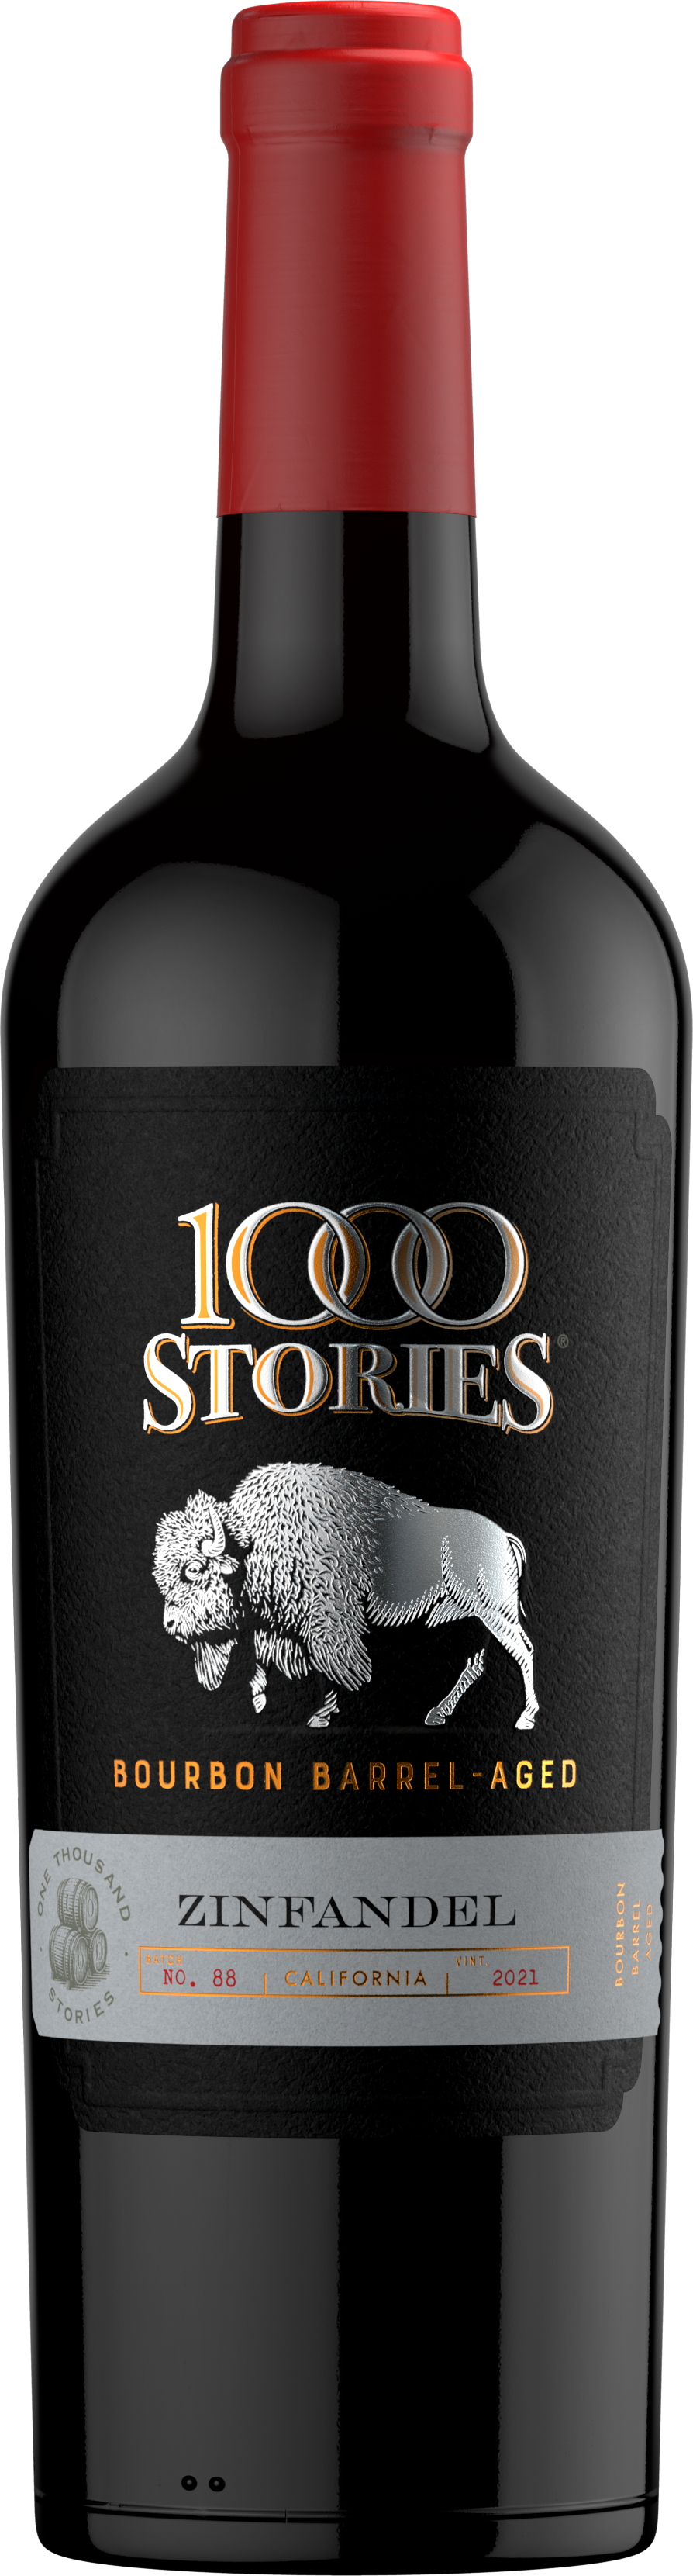 1000 Stories Zinfandel 2021 – Batch 88